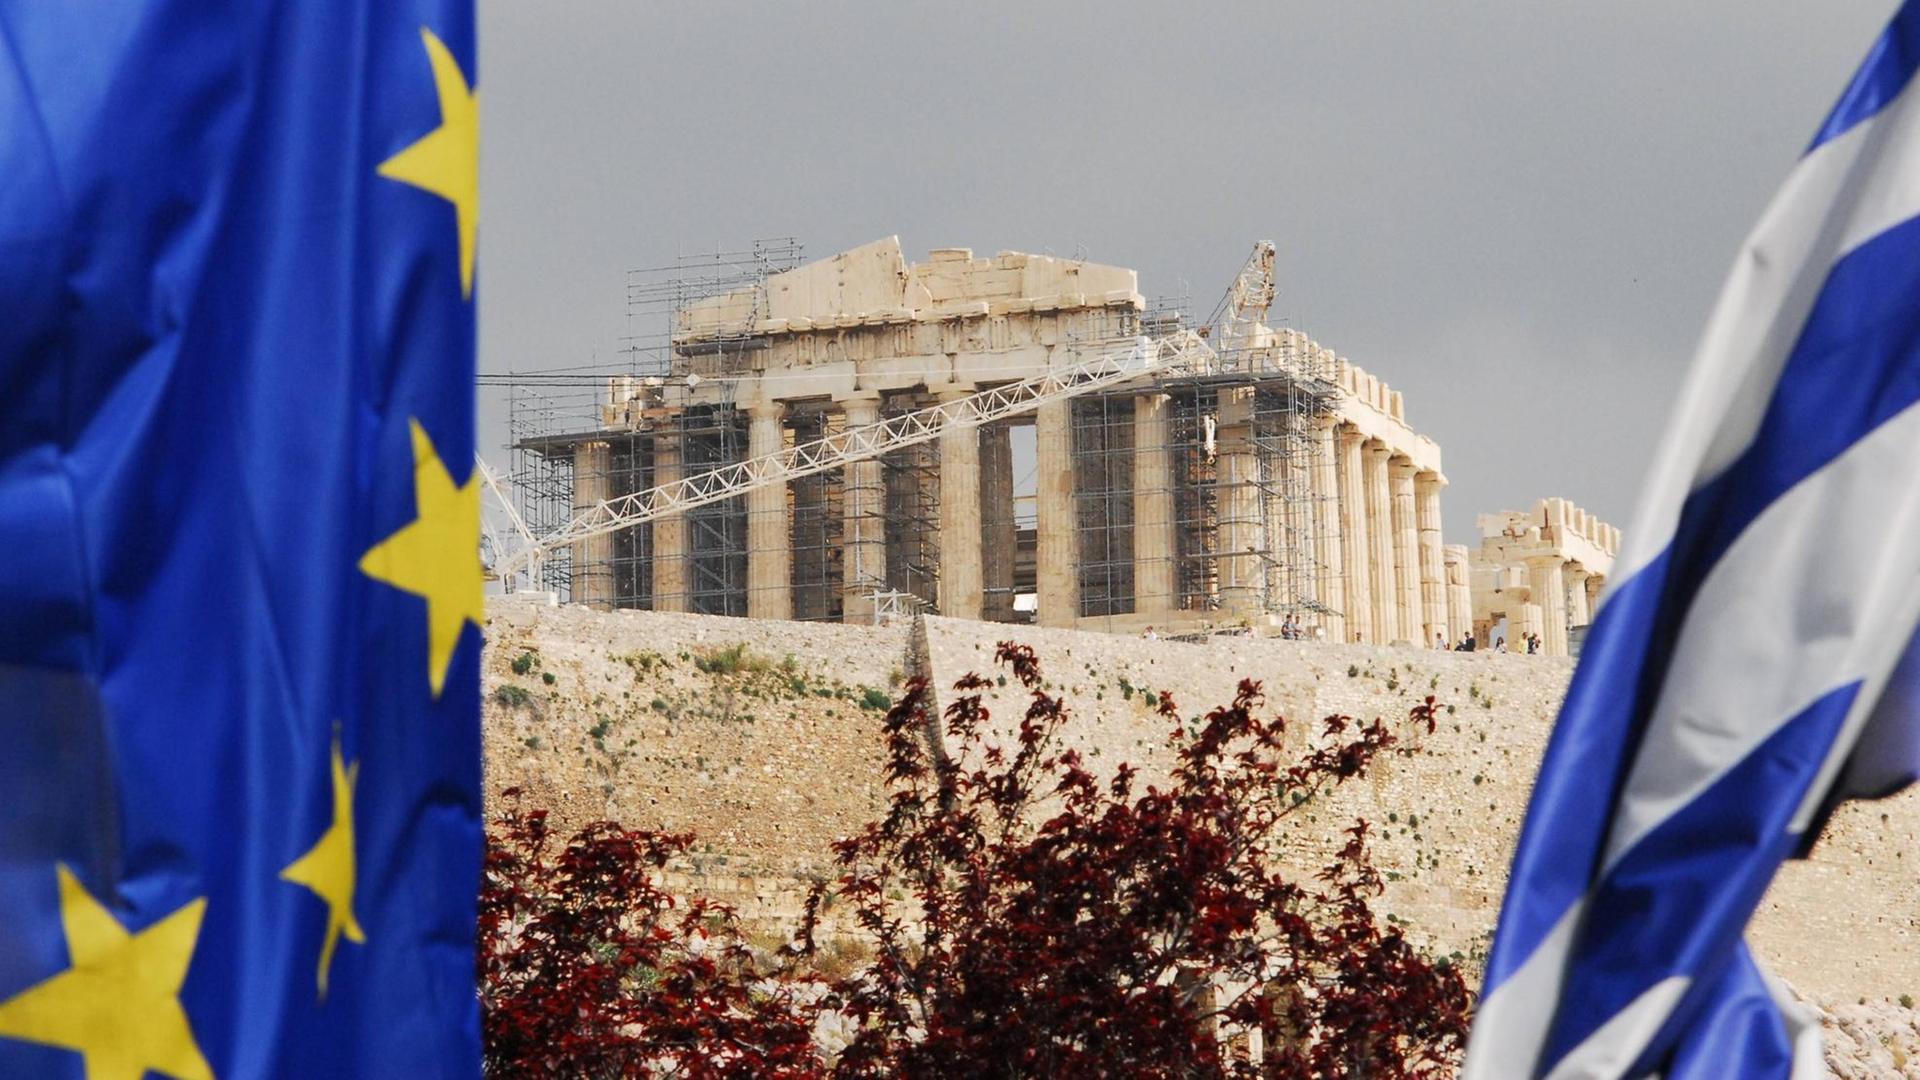 Die Flaggen Griechenlands und der EU vor der Akropolis in Athen